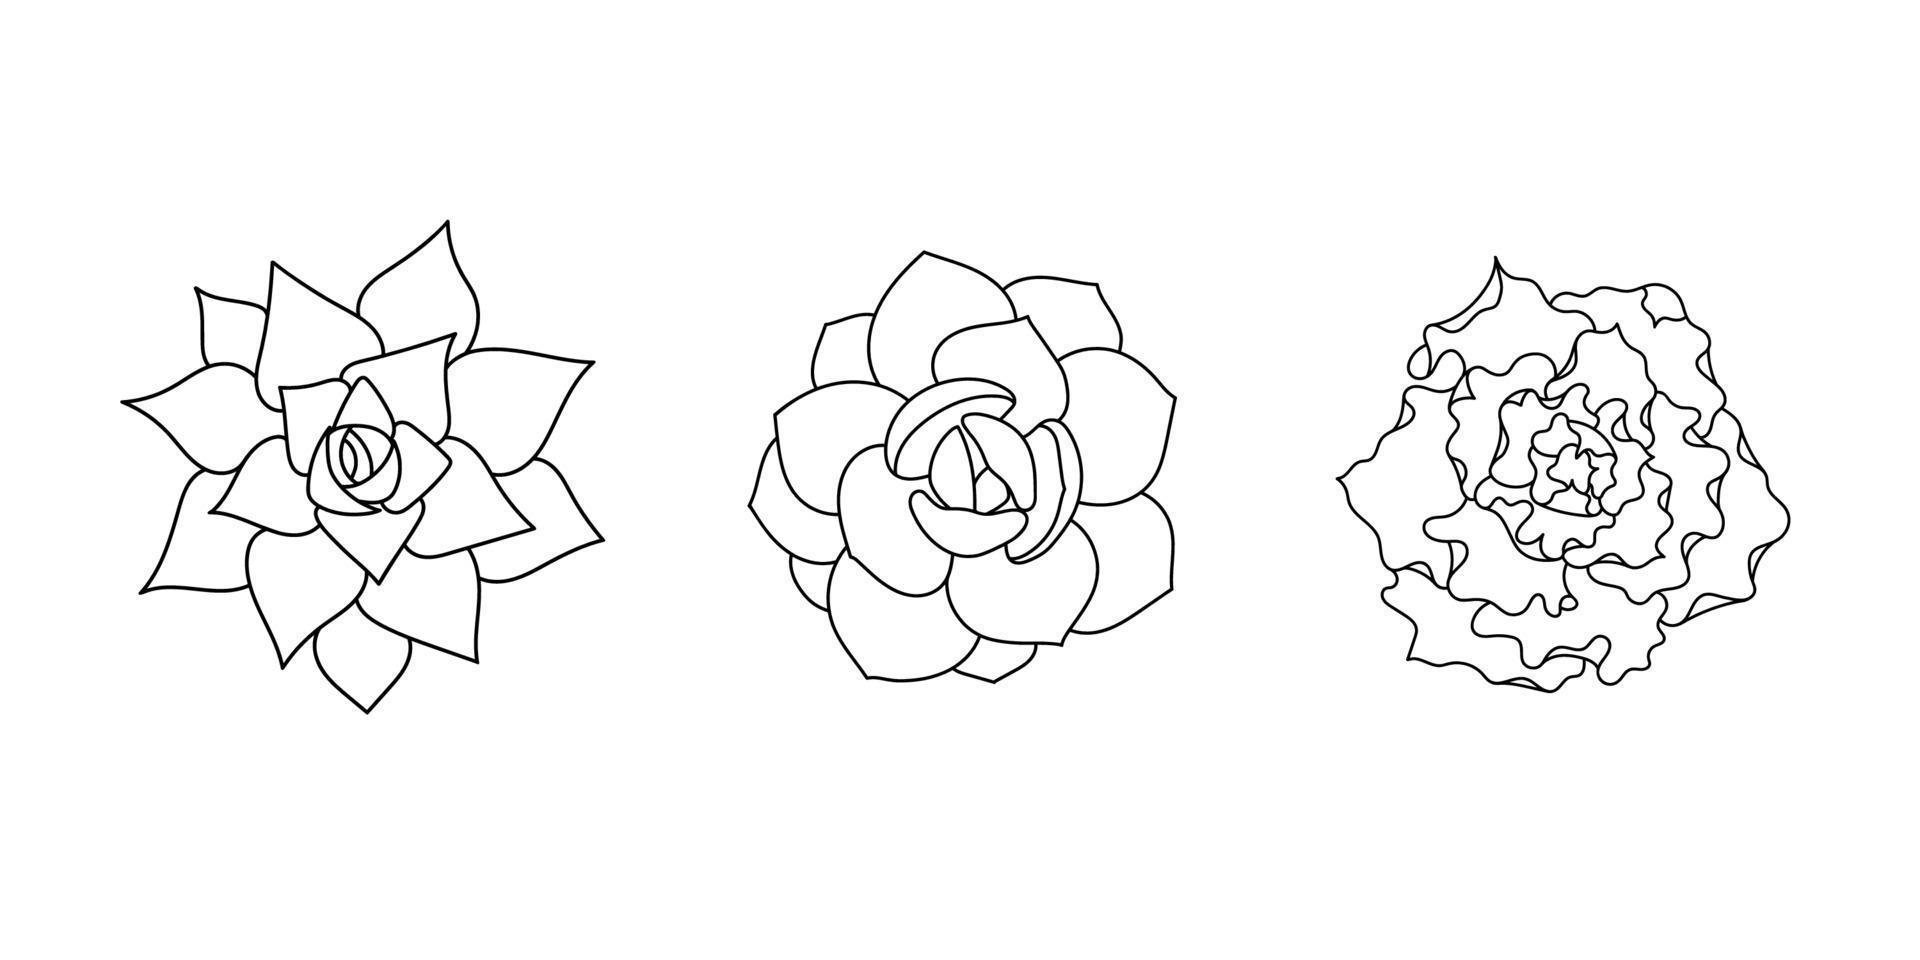 ensemble d'echeveria succulent - shaviana, agavoides, laui. plante dessinée à la main dans un style doodle. croquis graphique maison fleur. illustration vectorielle, élément noir isolé sur fond blanc vecteur